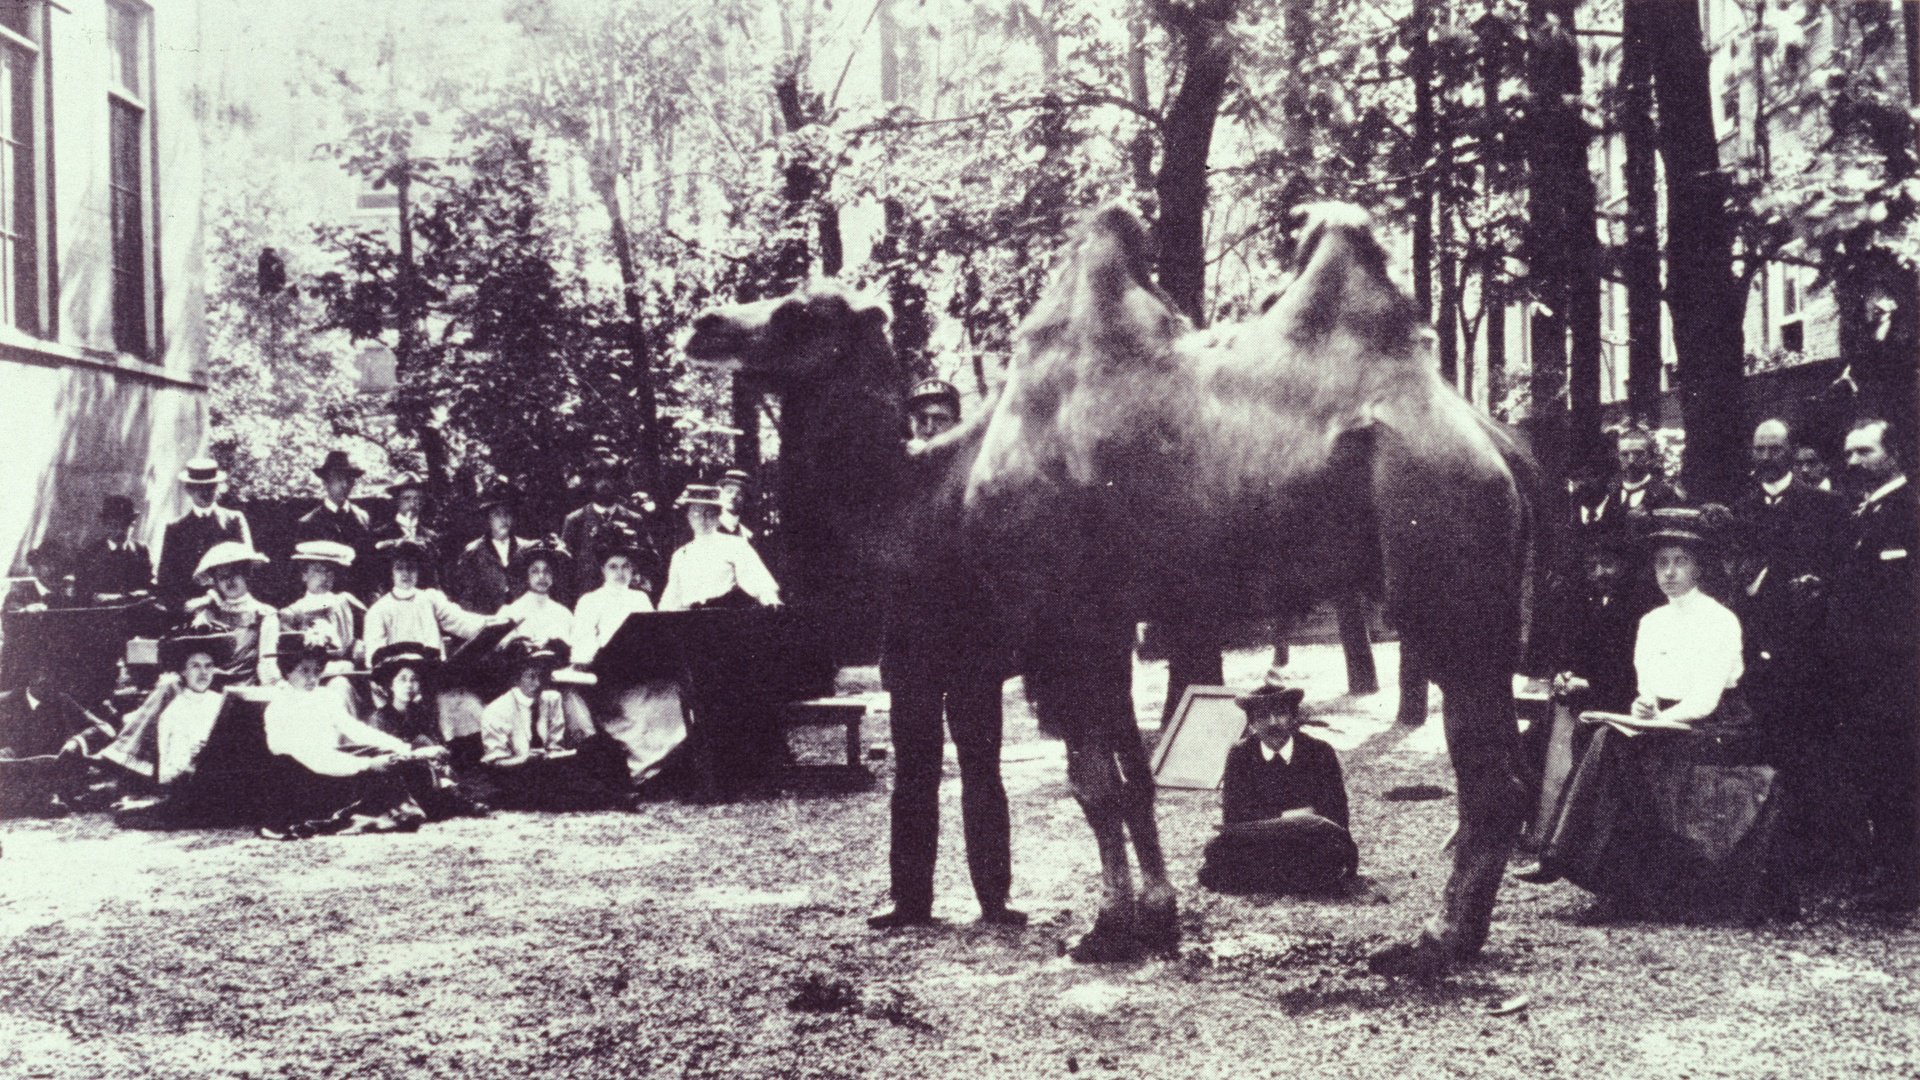 Tekenles-in-de-tuin-van-de-Rijksakademie-met-een-kameel-uit-Artis-ca-1907-1908 (3) (1).jpg